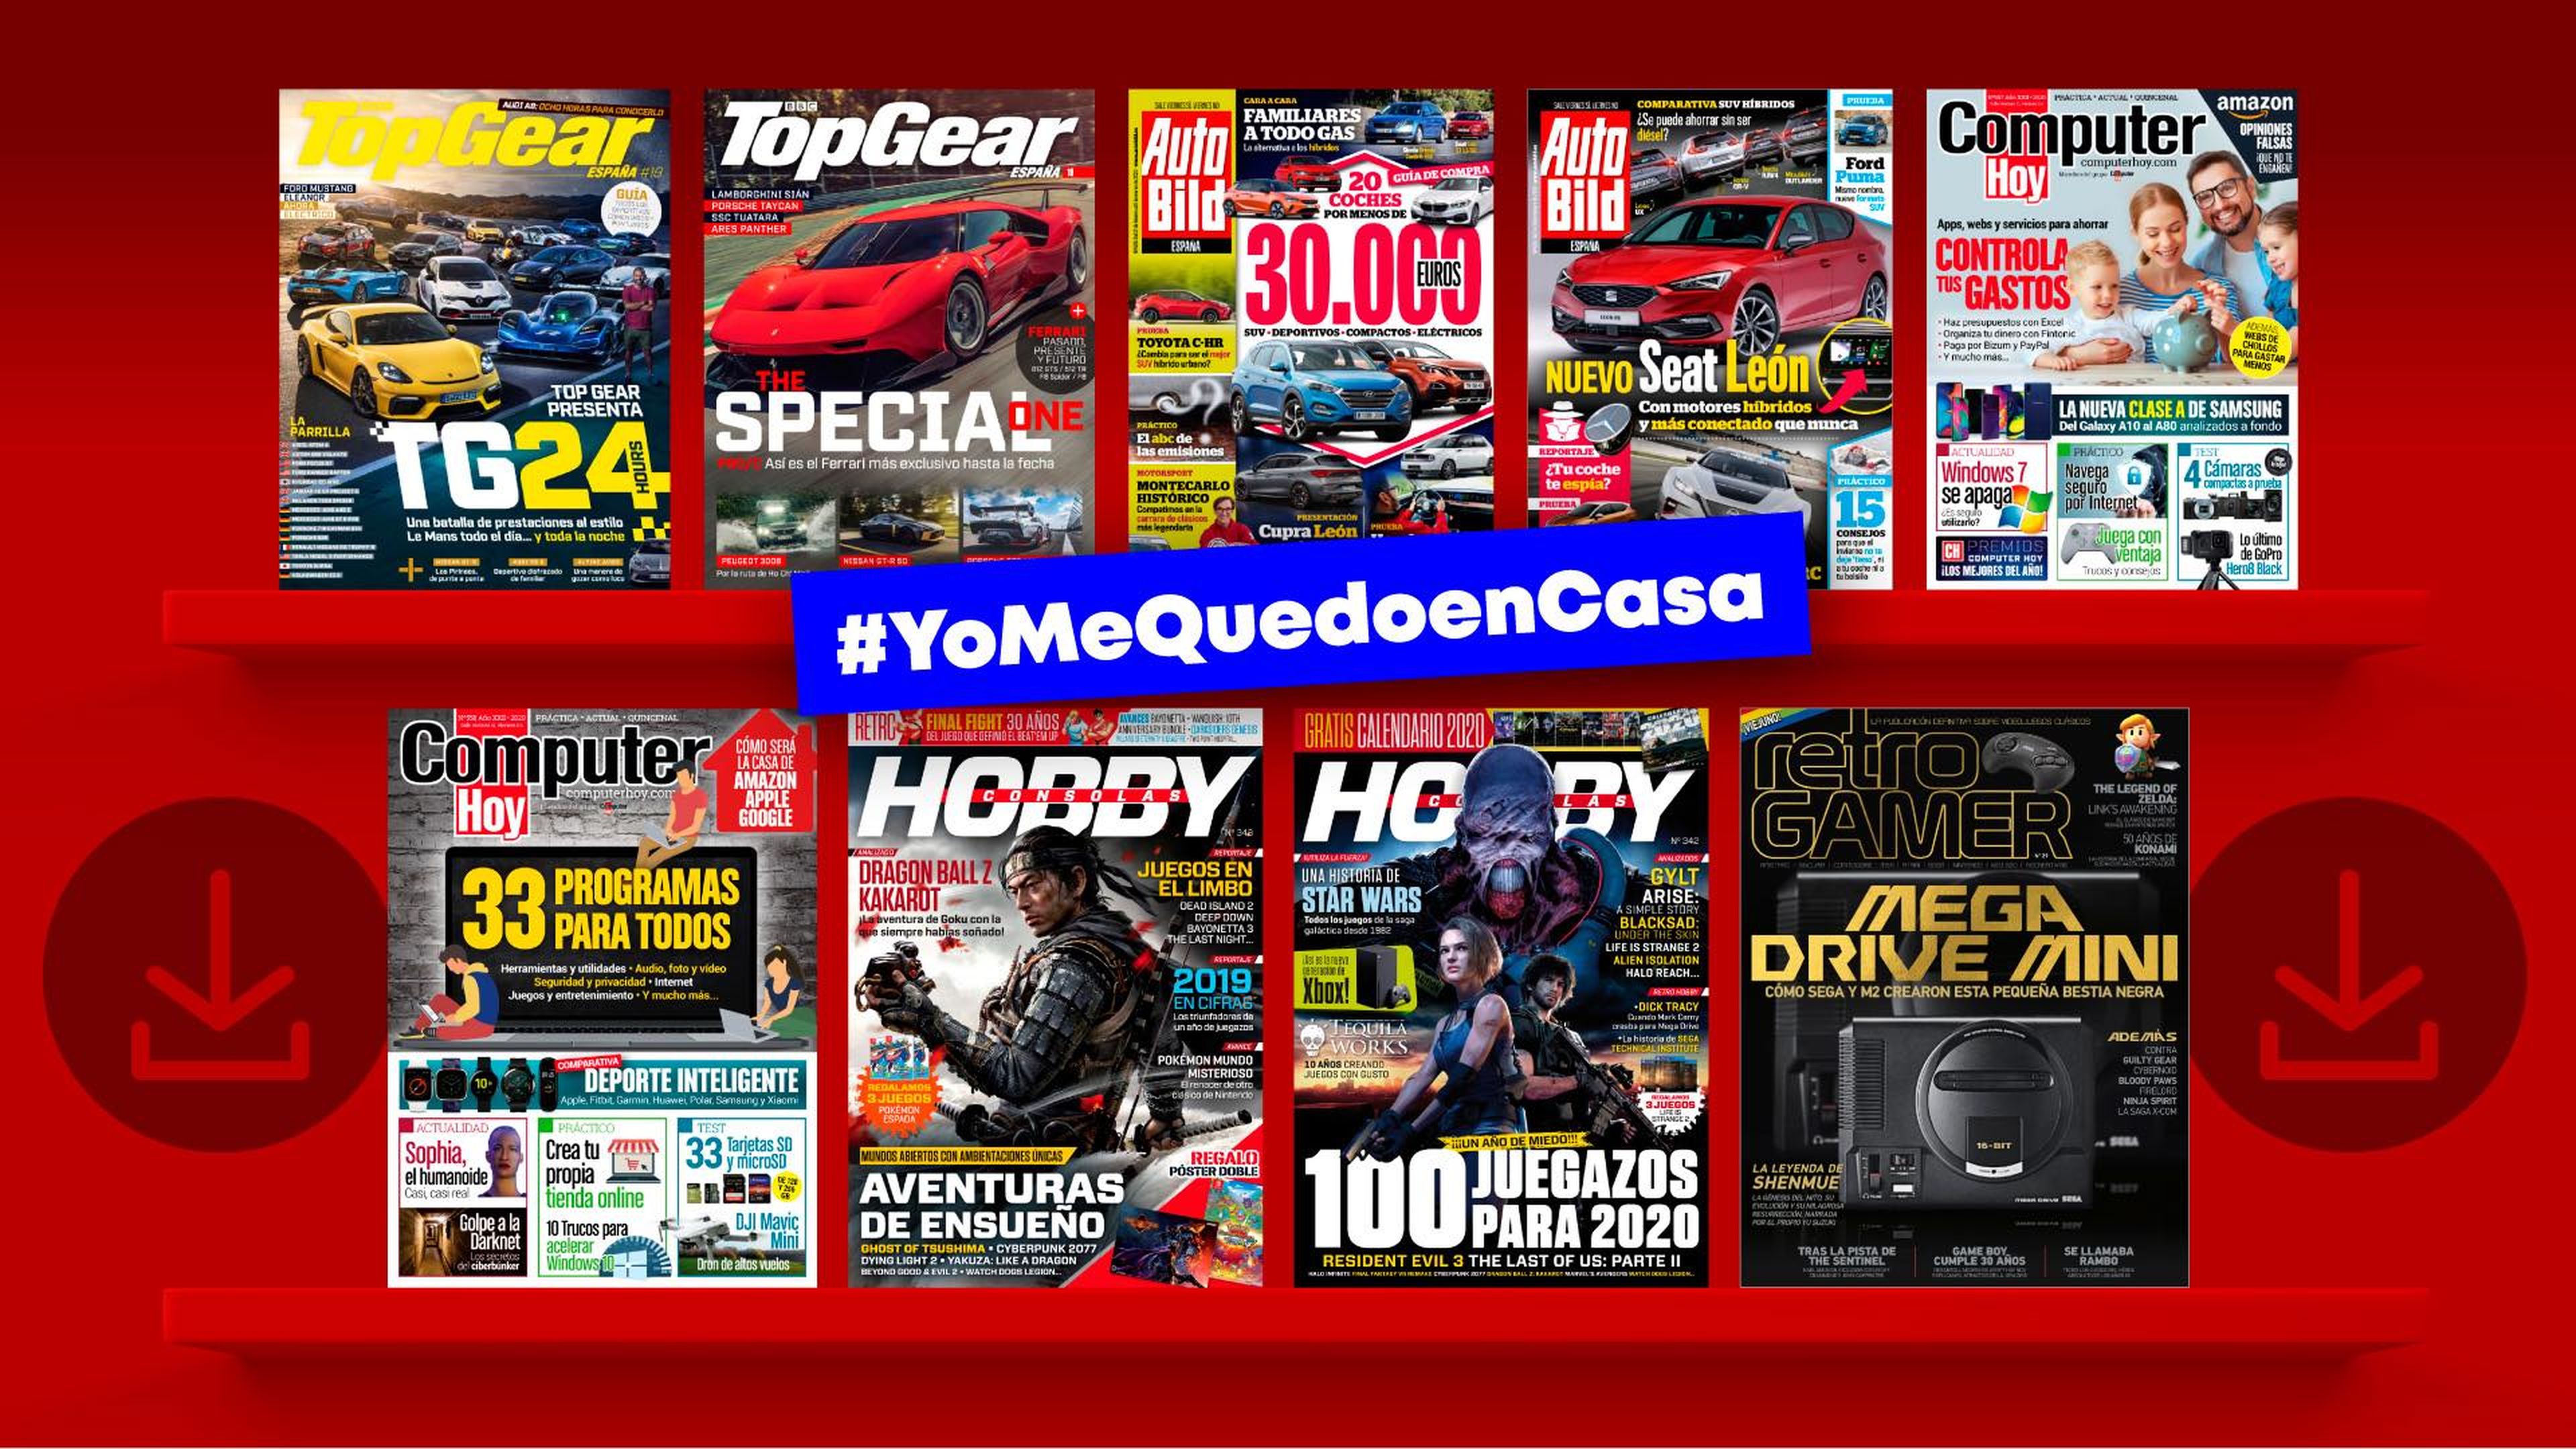 Revista Hobbyconsolas #yomequedoencasa